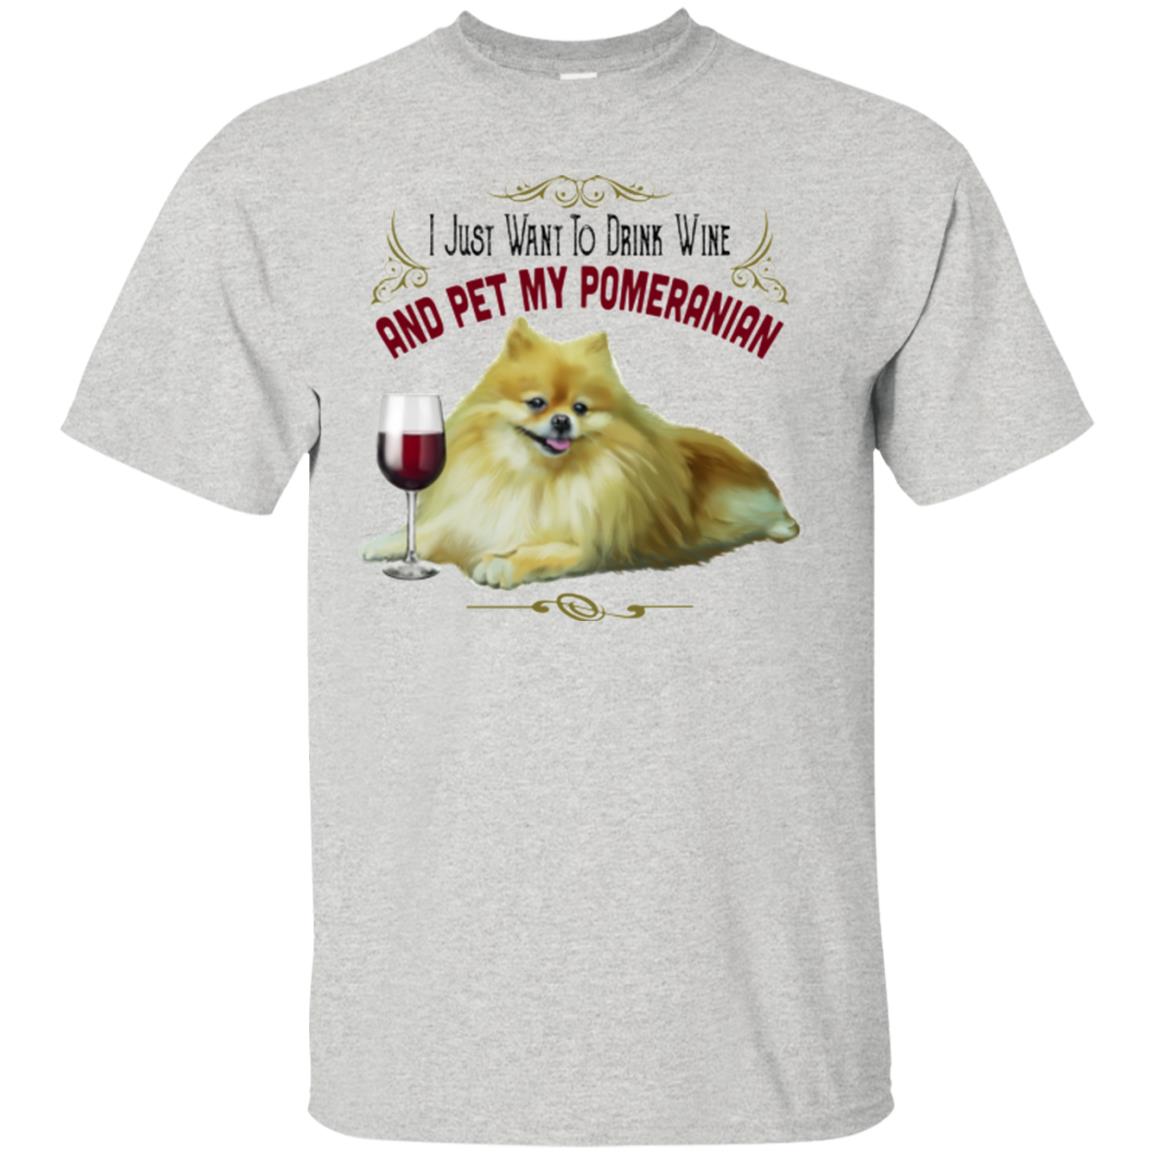 Pomeranian Shirt for Women - GoneBold.gift